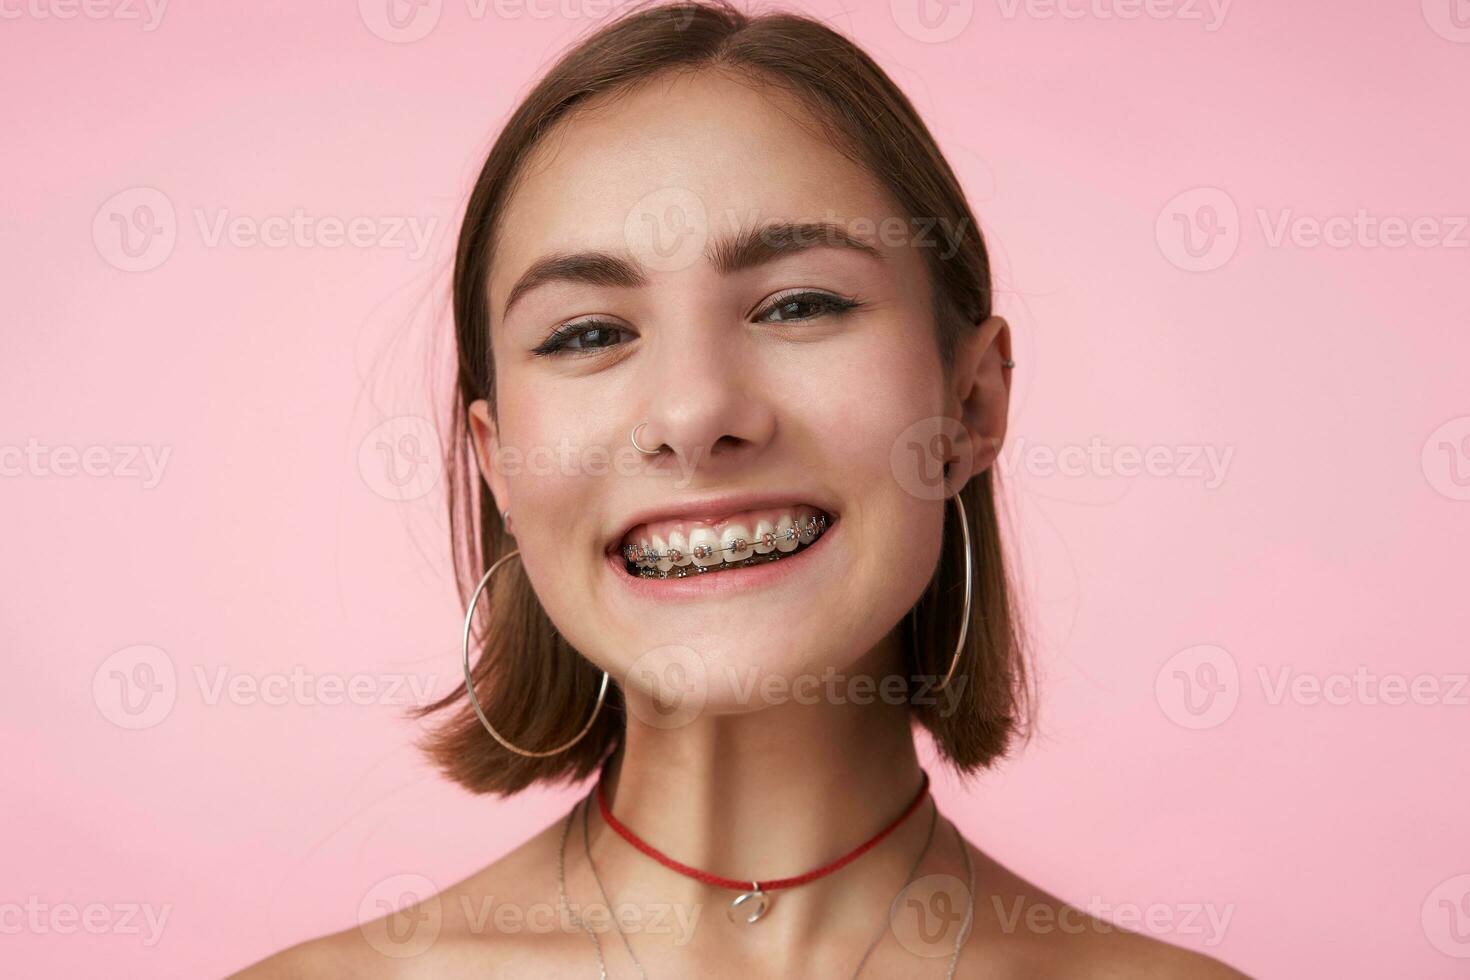 studio skott av ung Söt glad kort håriga brunett kvinna med guppa frisyr varelse i trevlig humör och leende lyckligt till kamera, isolerat över rosa bakgrund foto